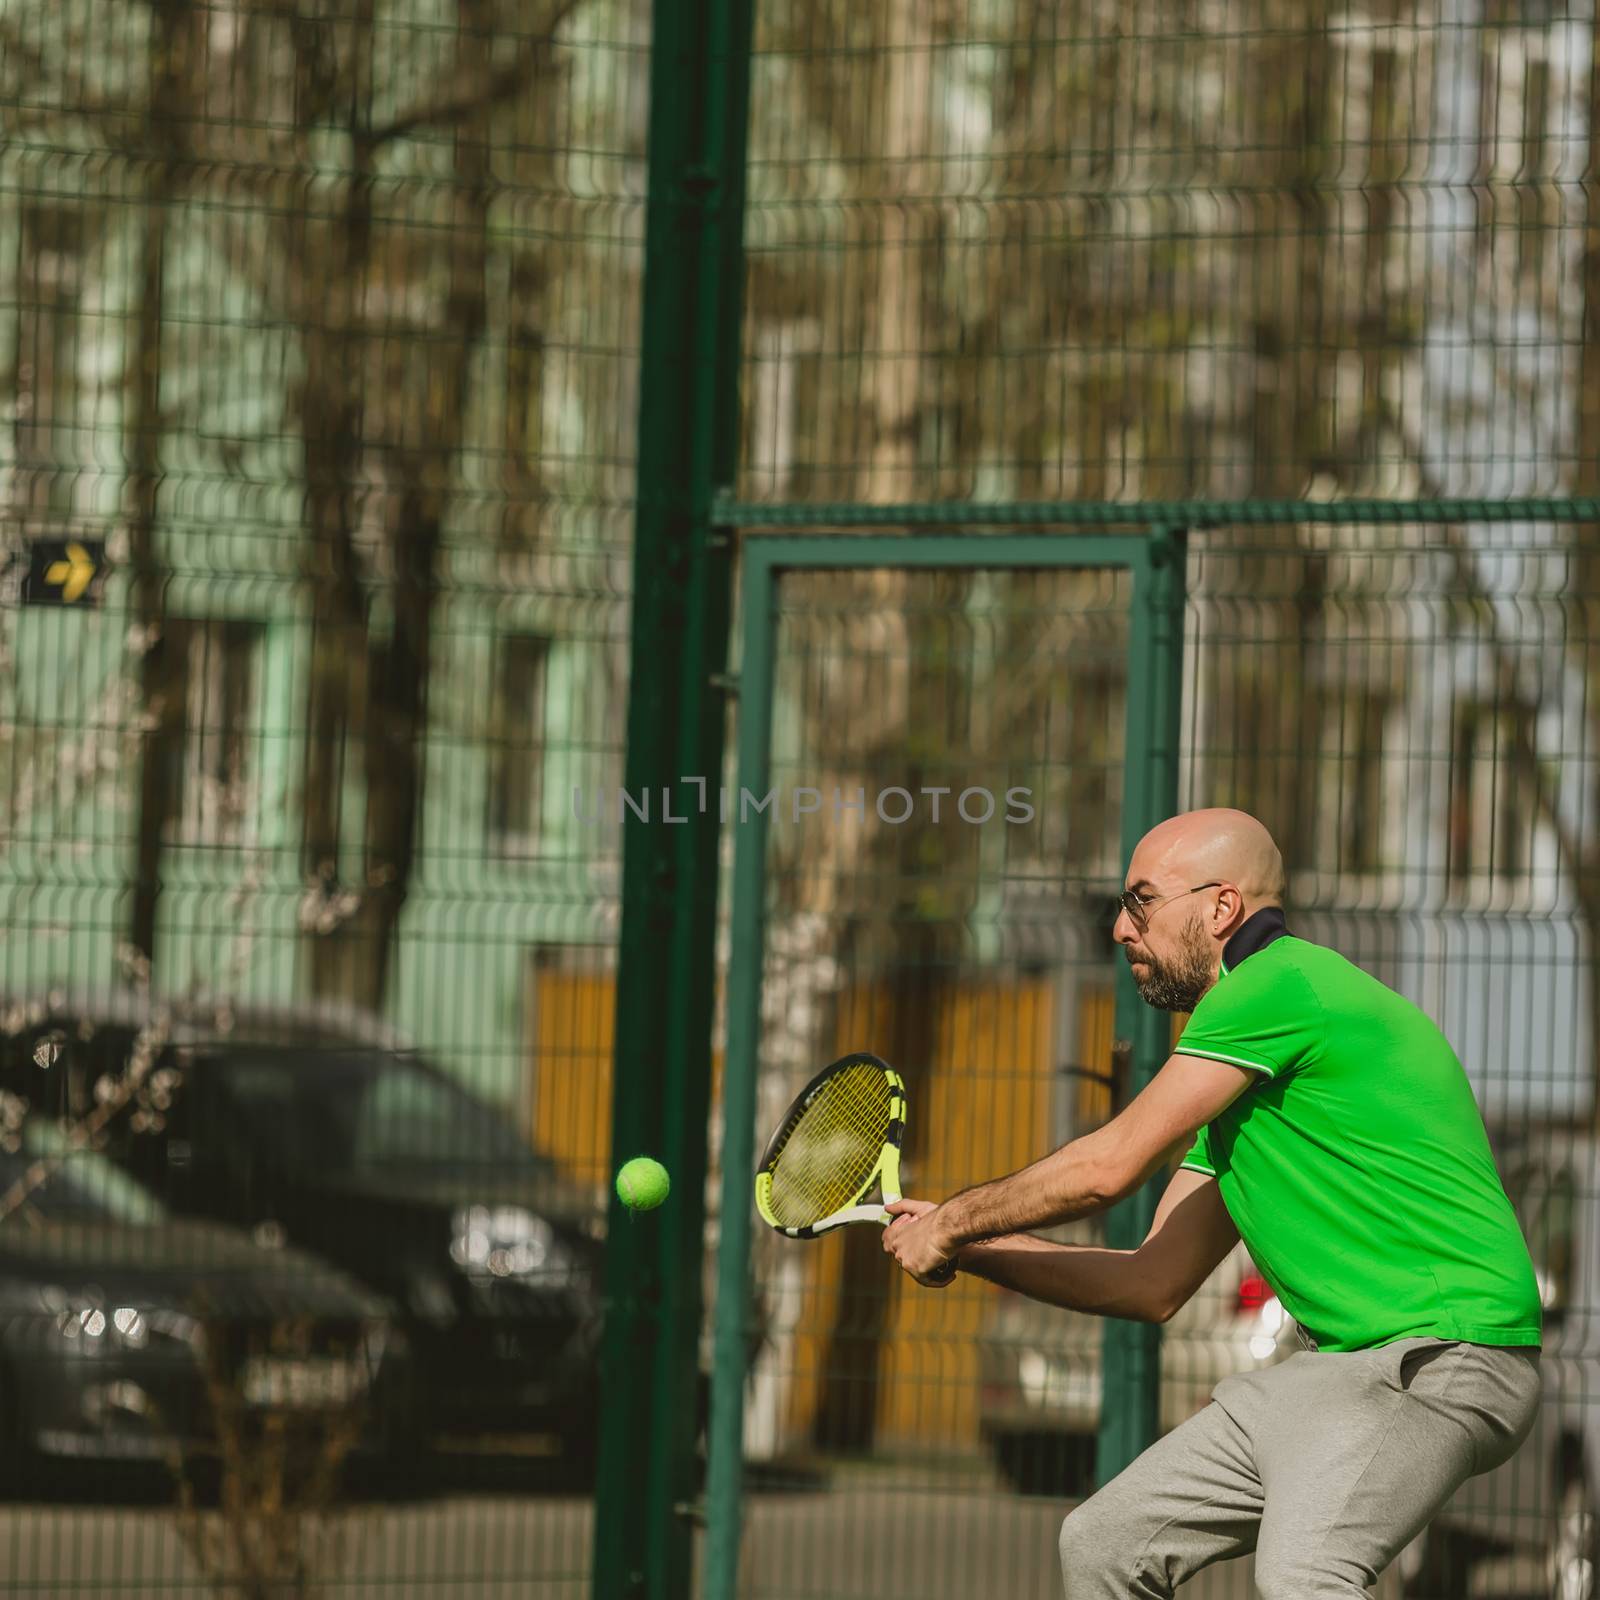 man play tennis outdoor by sarymsakov